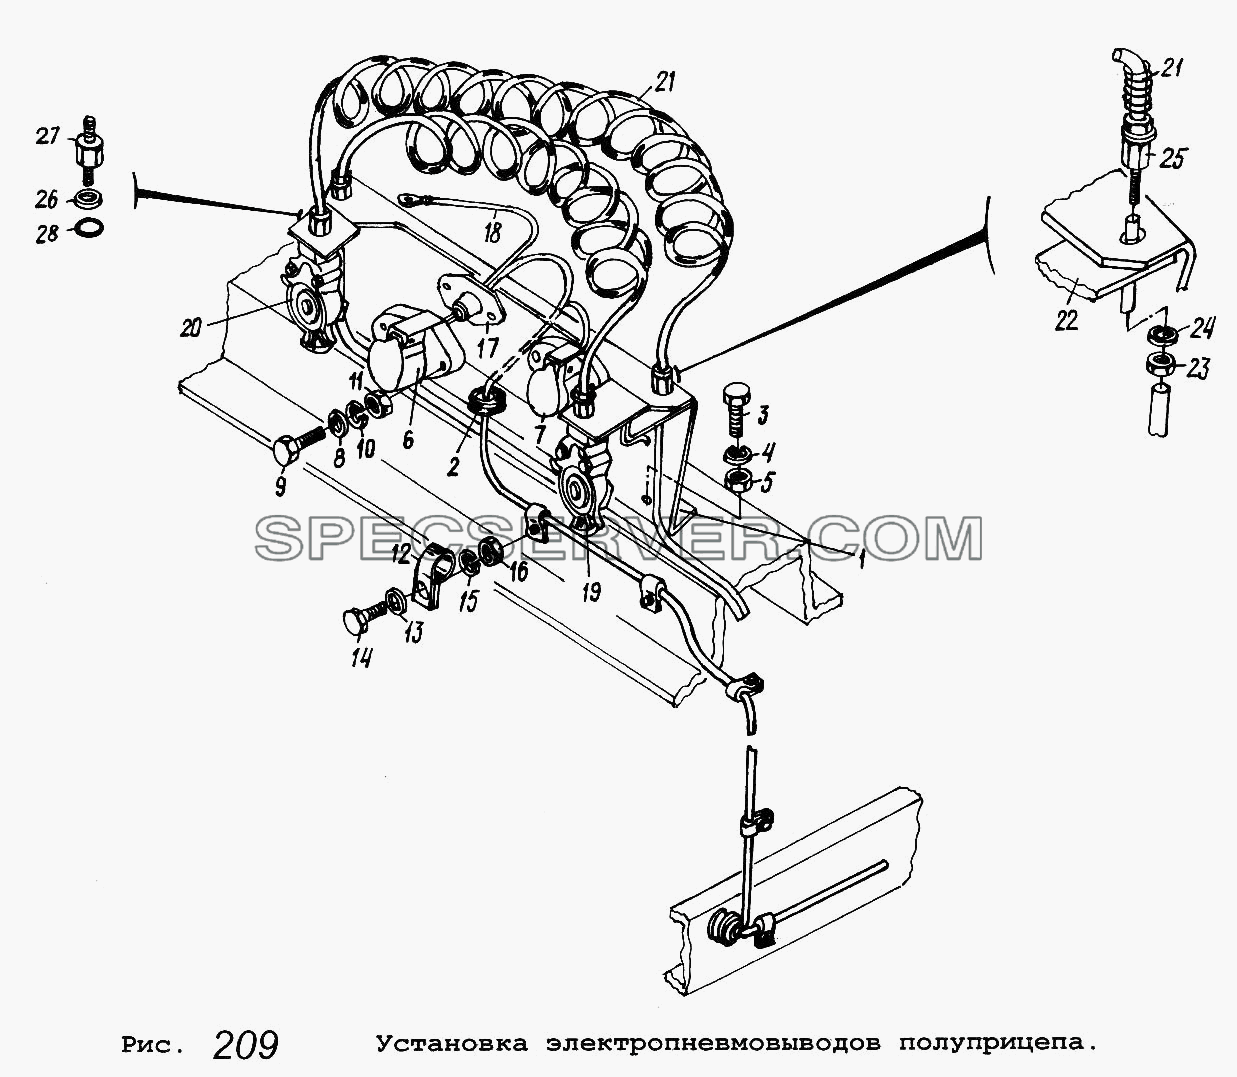 Установка электропневмовыводов полуприцепа для МАЗ-54323 (список запасных частей)